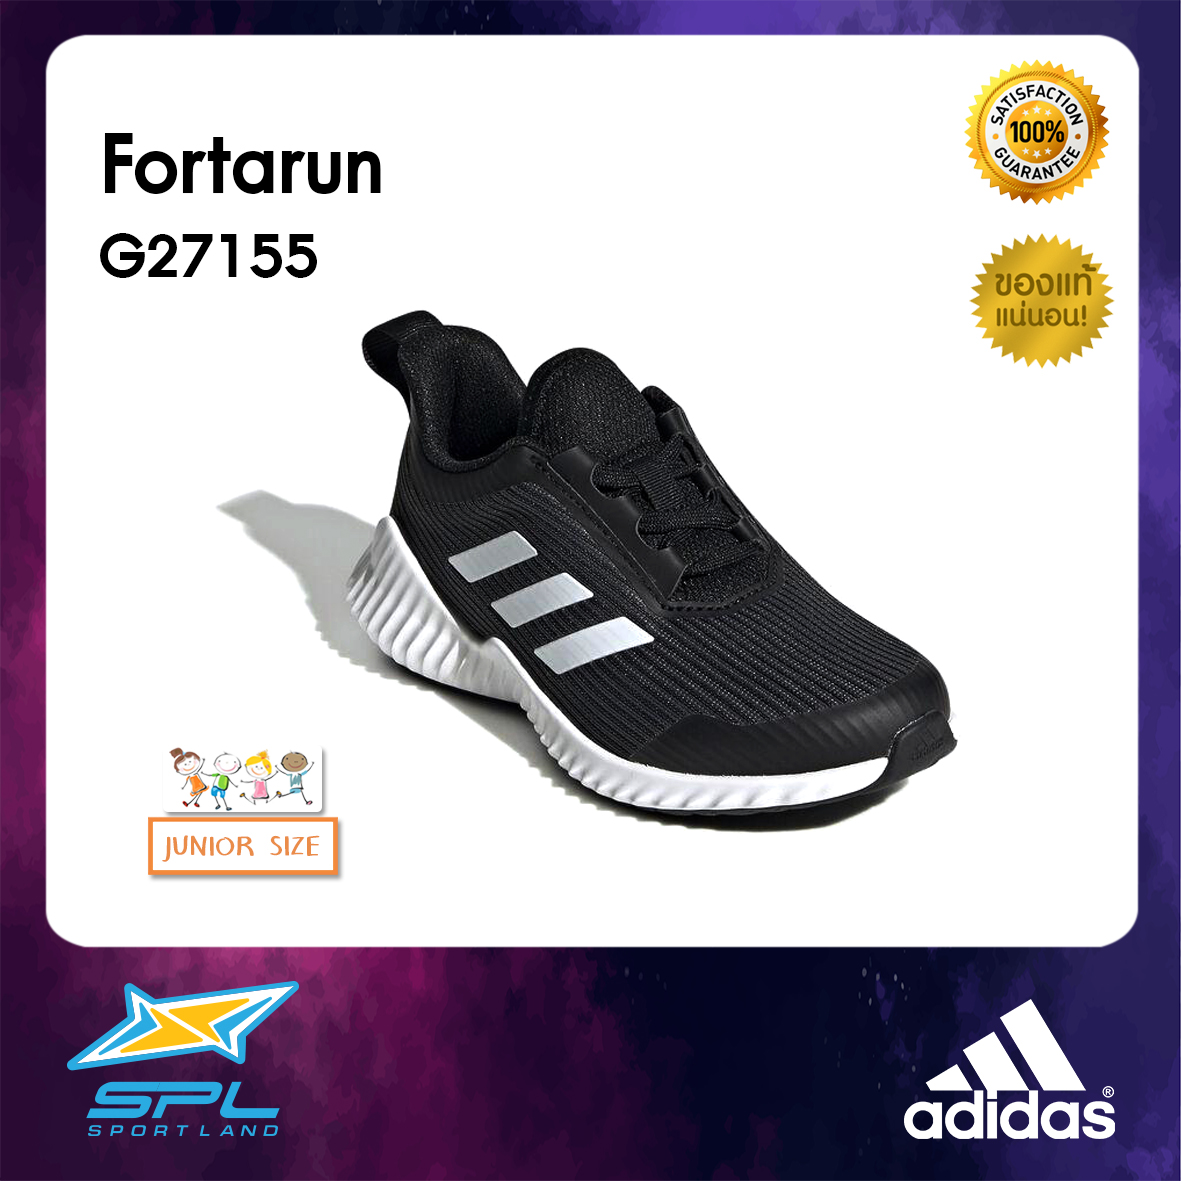 Adidas รองเท้า เทรนนิ่ง รองเท้ากีฬาเด็ก ผ้าใบเด็ก อาดิดาส Training Junior Shoe Fortarun G27155 (1600)